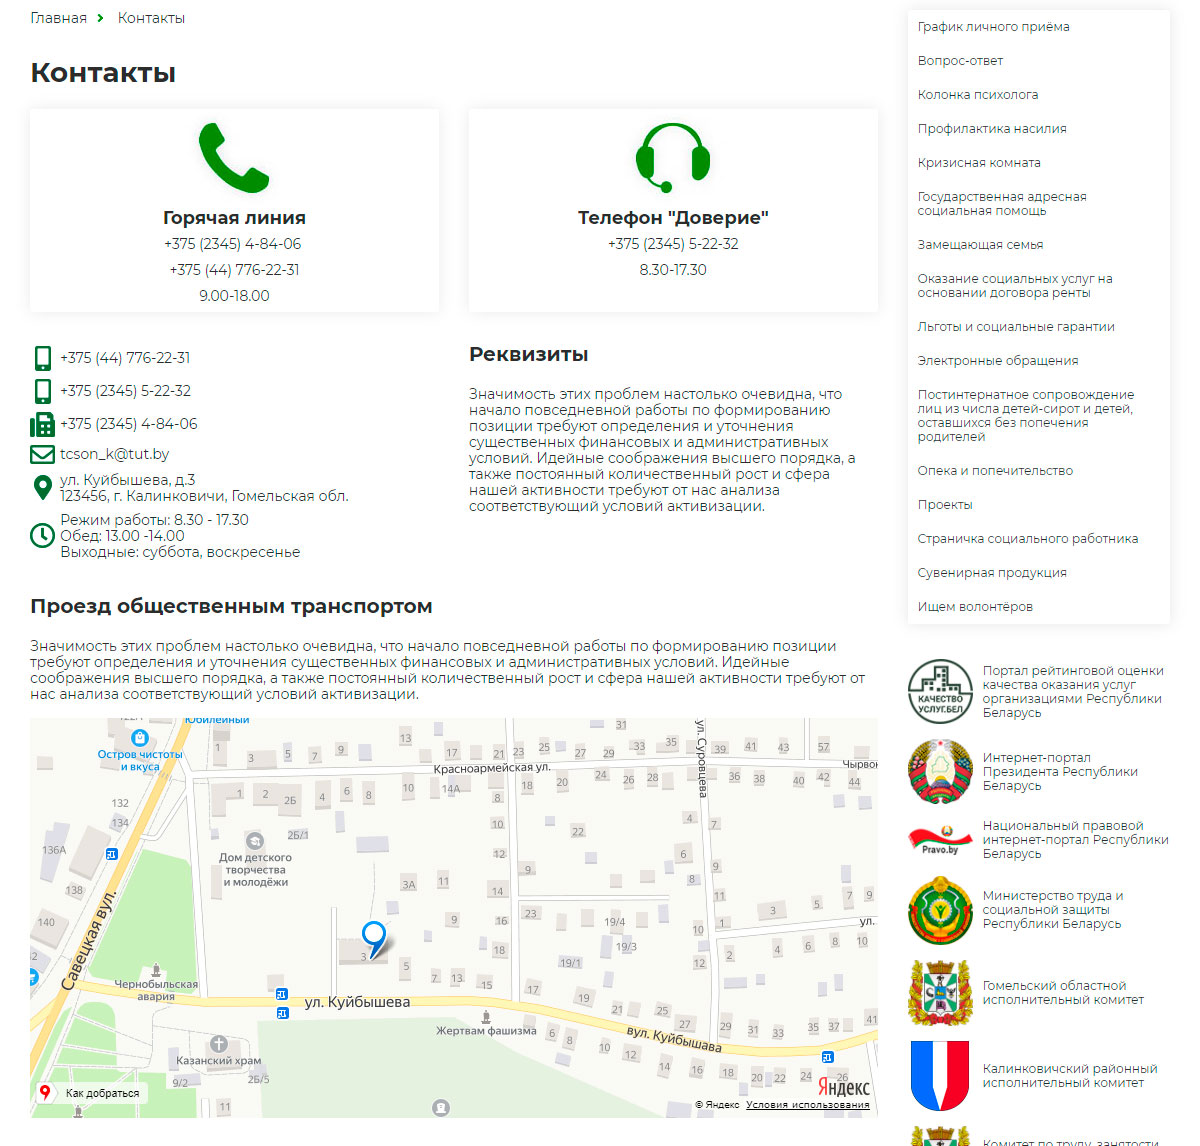 учреждение «территориальный центр социального обслуживания населения калинковичского района»